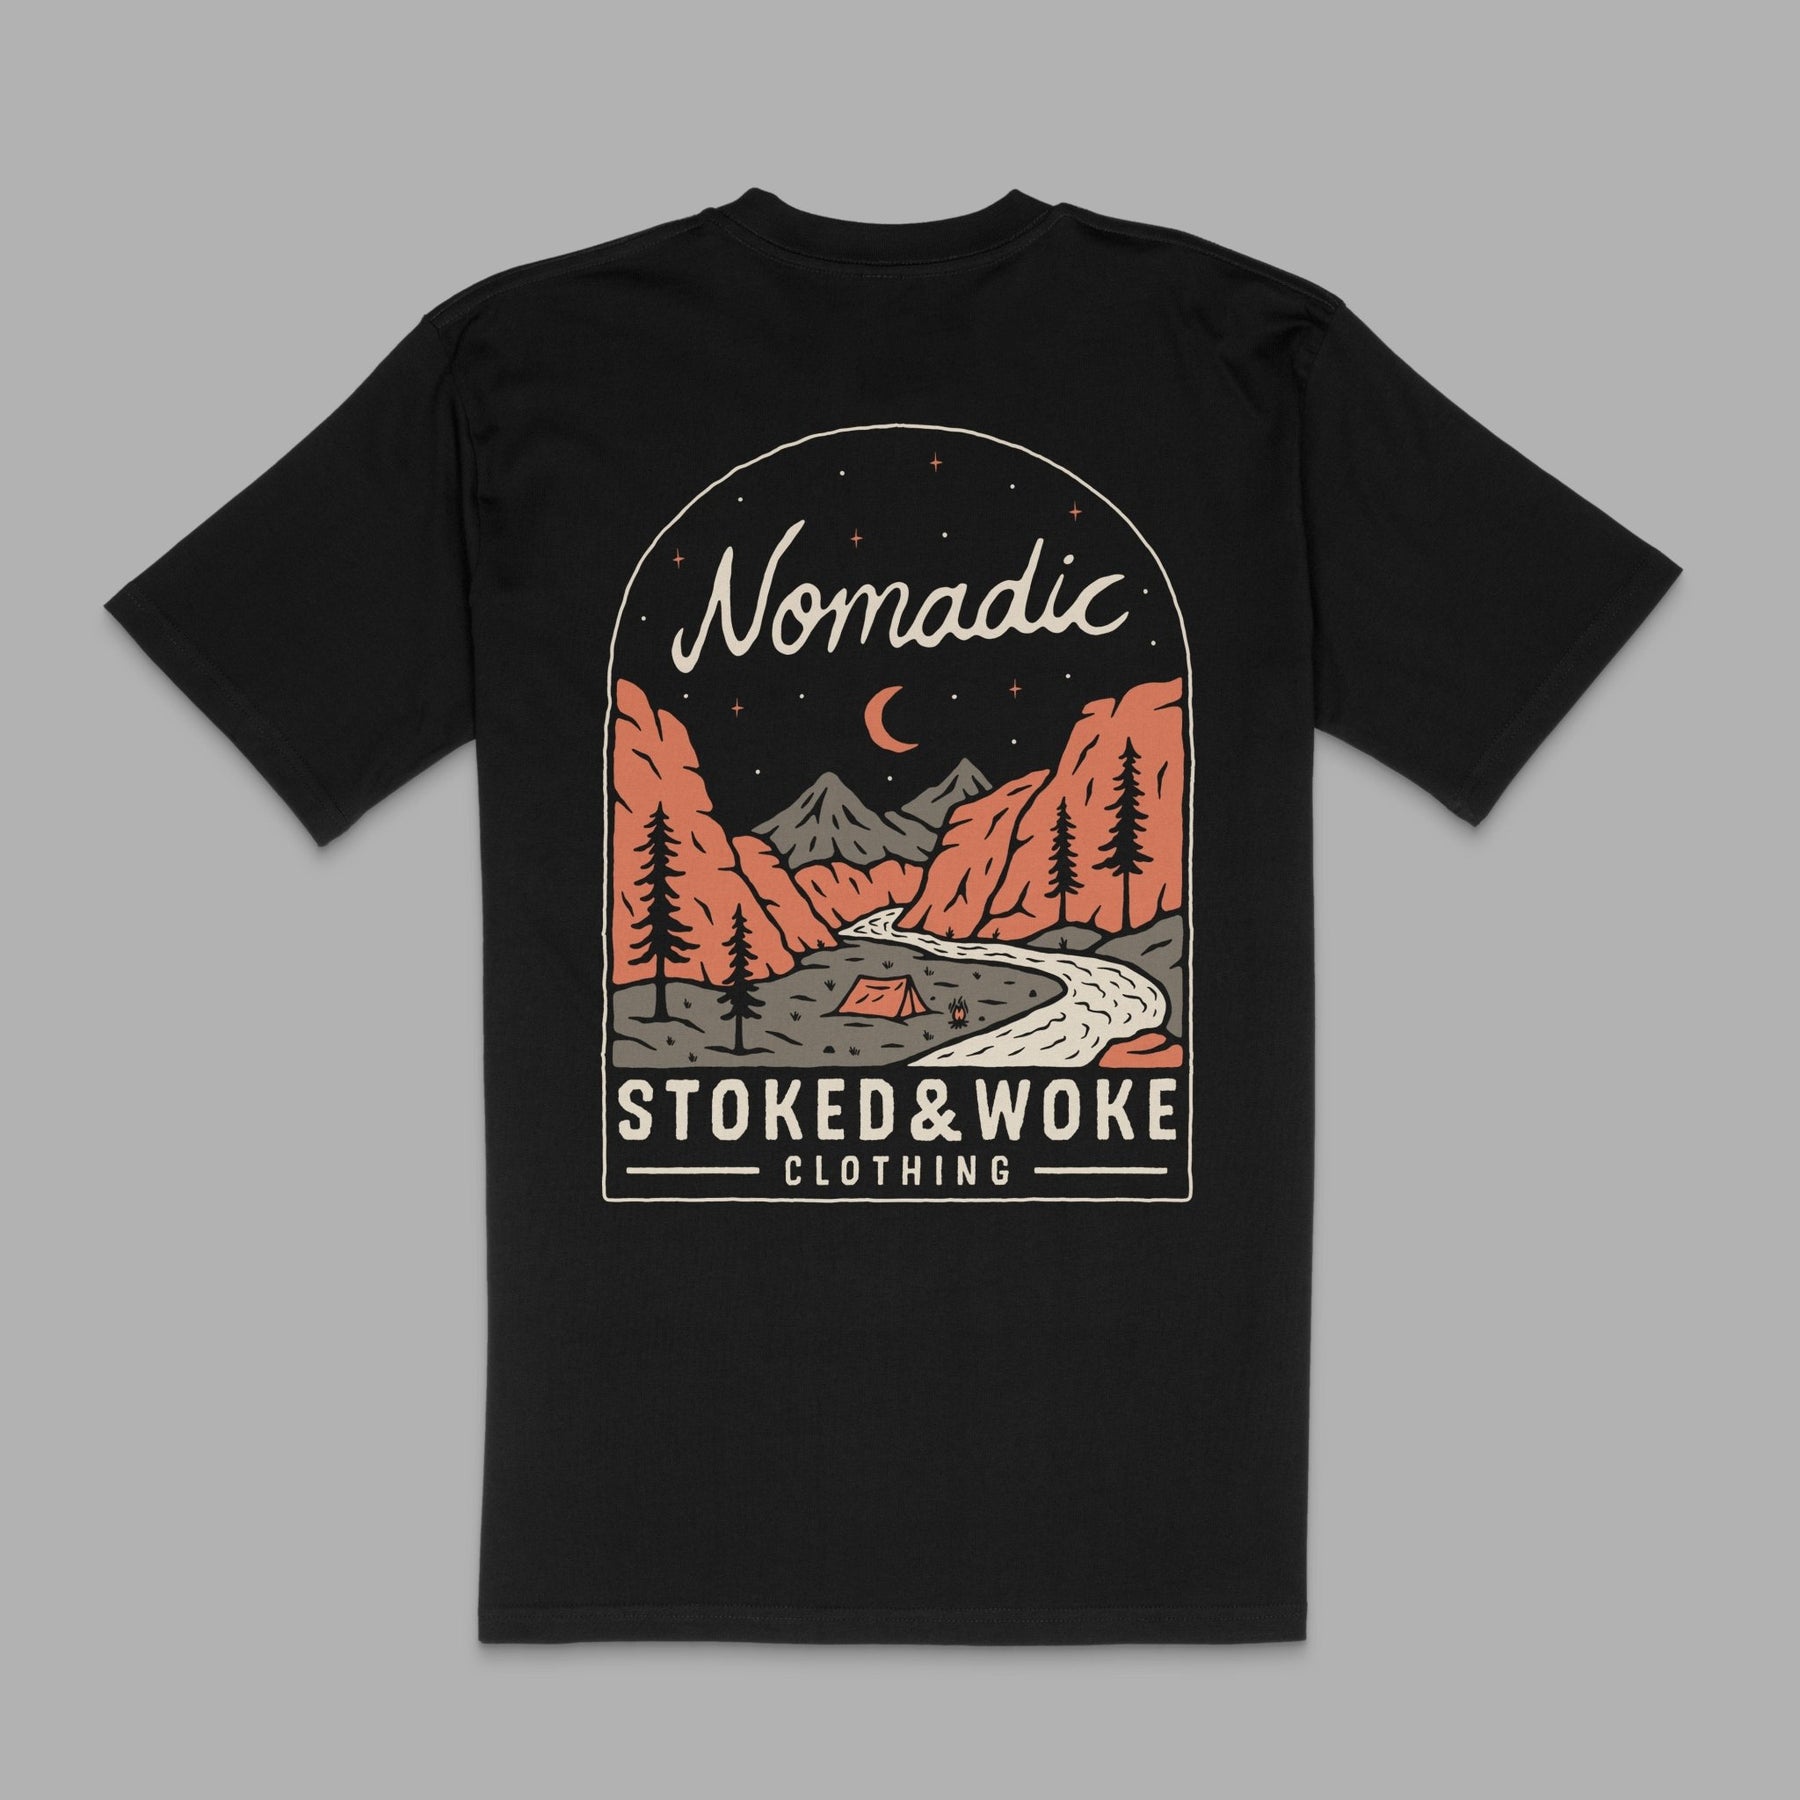 Organic "Nomadic" Tee - Stoked&Woke Clothing